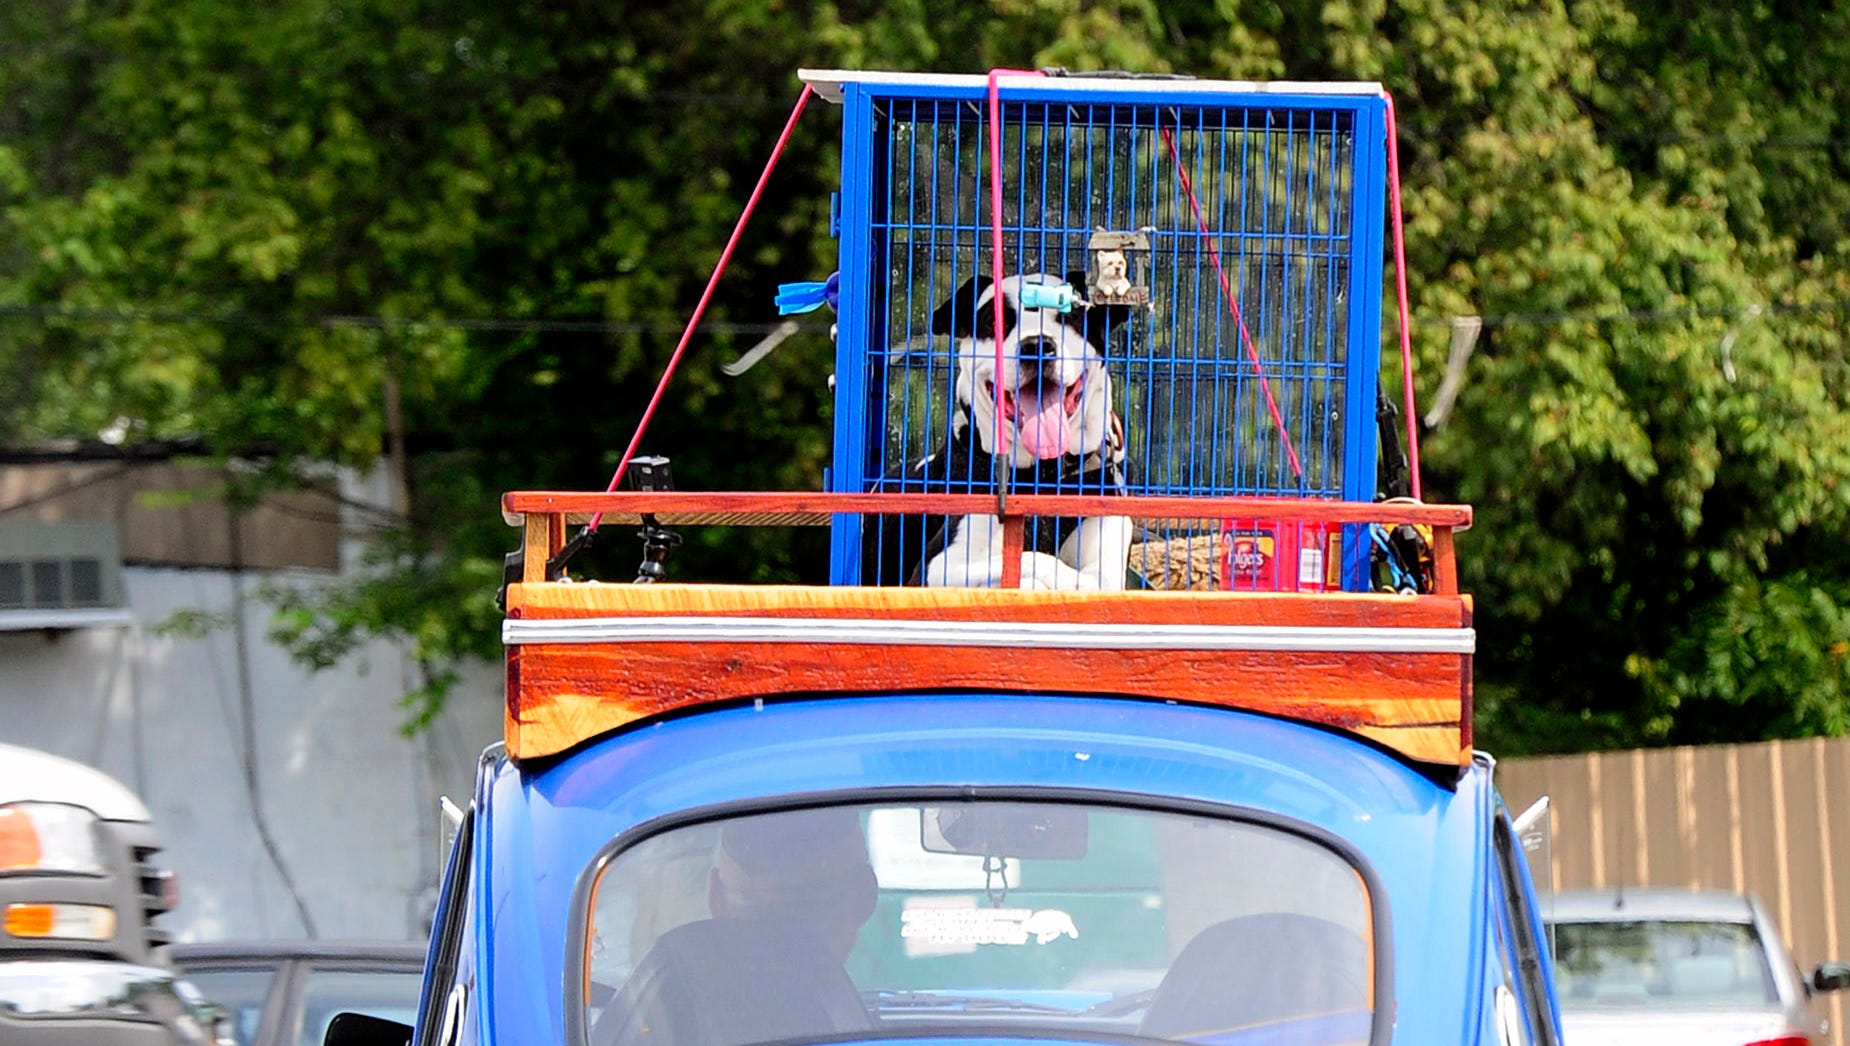 Integral pakke læder East Nashville dog has a one-of-a-kind ride